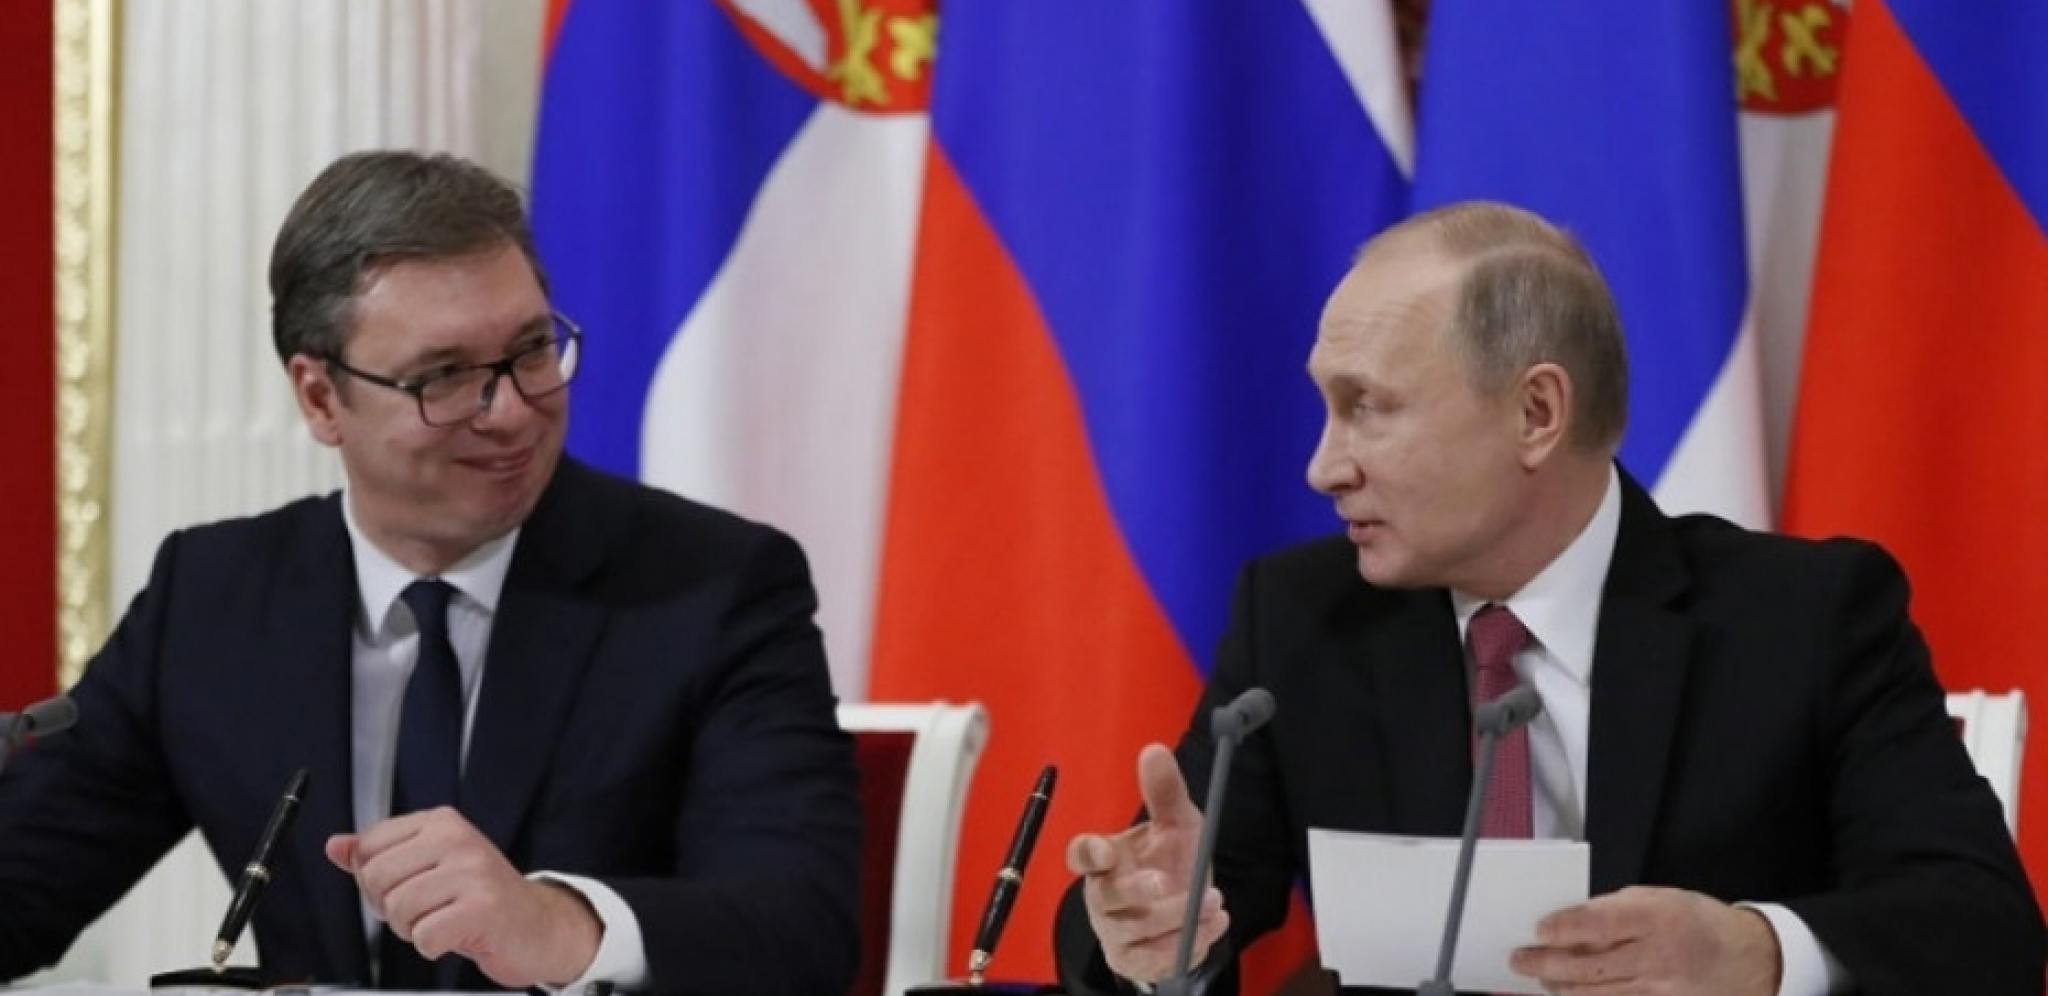 HITNO Vučić ide kod Putina - Rusija pomaže Srbiji oko Kosova i energetske krize